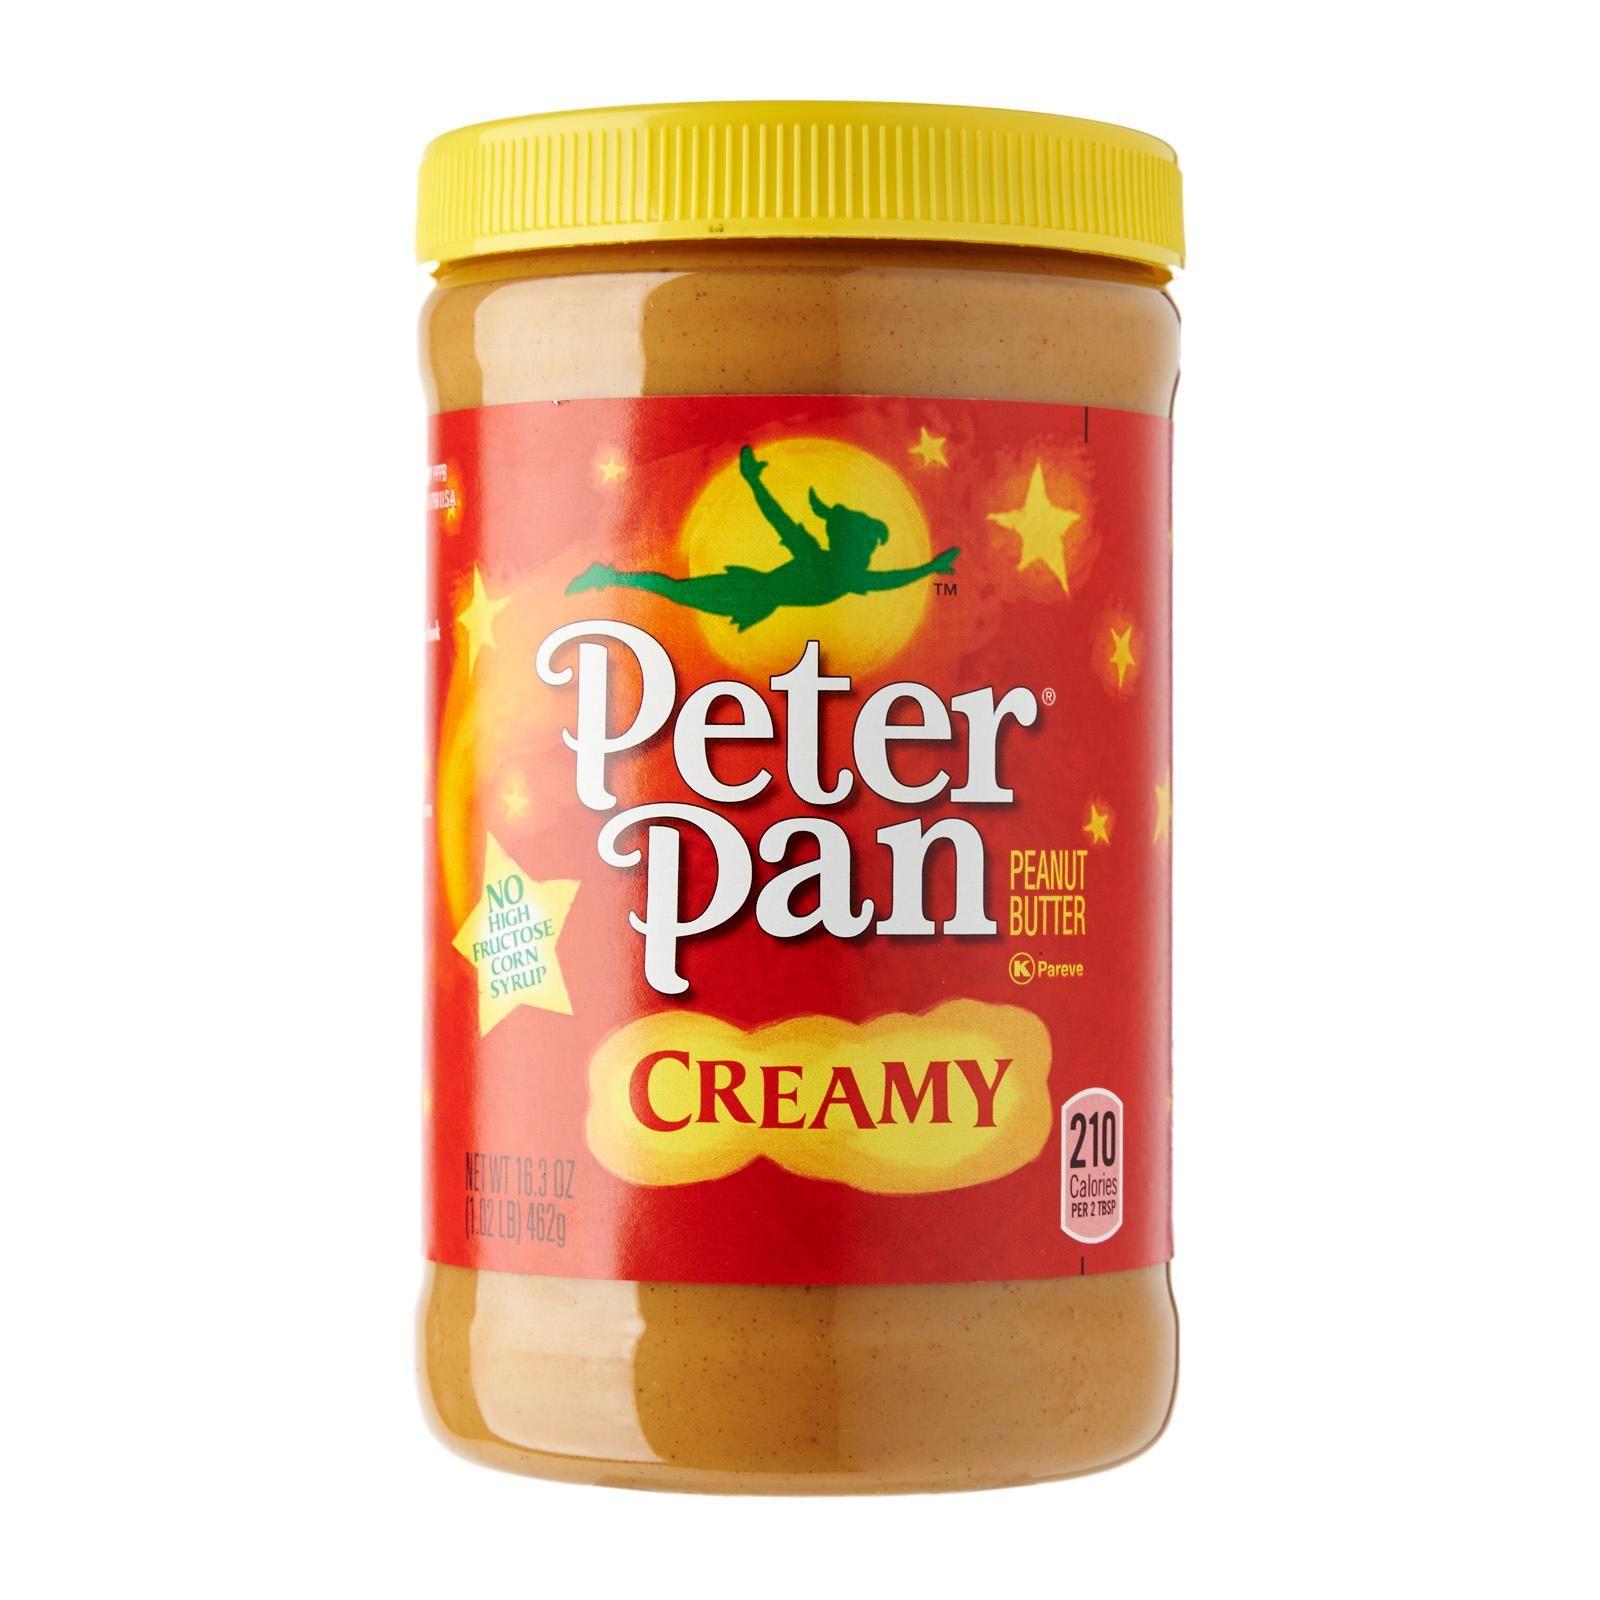 Peter Pan Peanut Butter Logo - Peter Pan Creamy Peanut Butter 462g